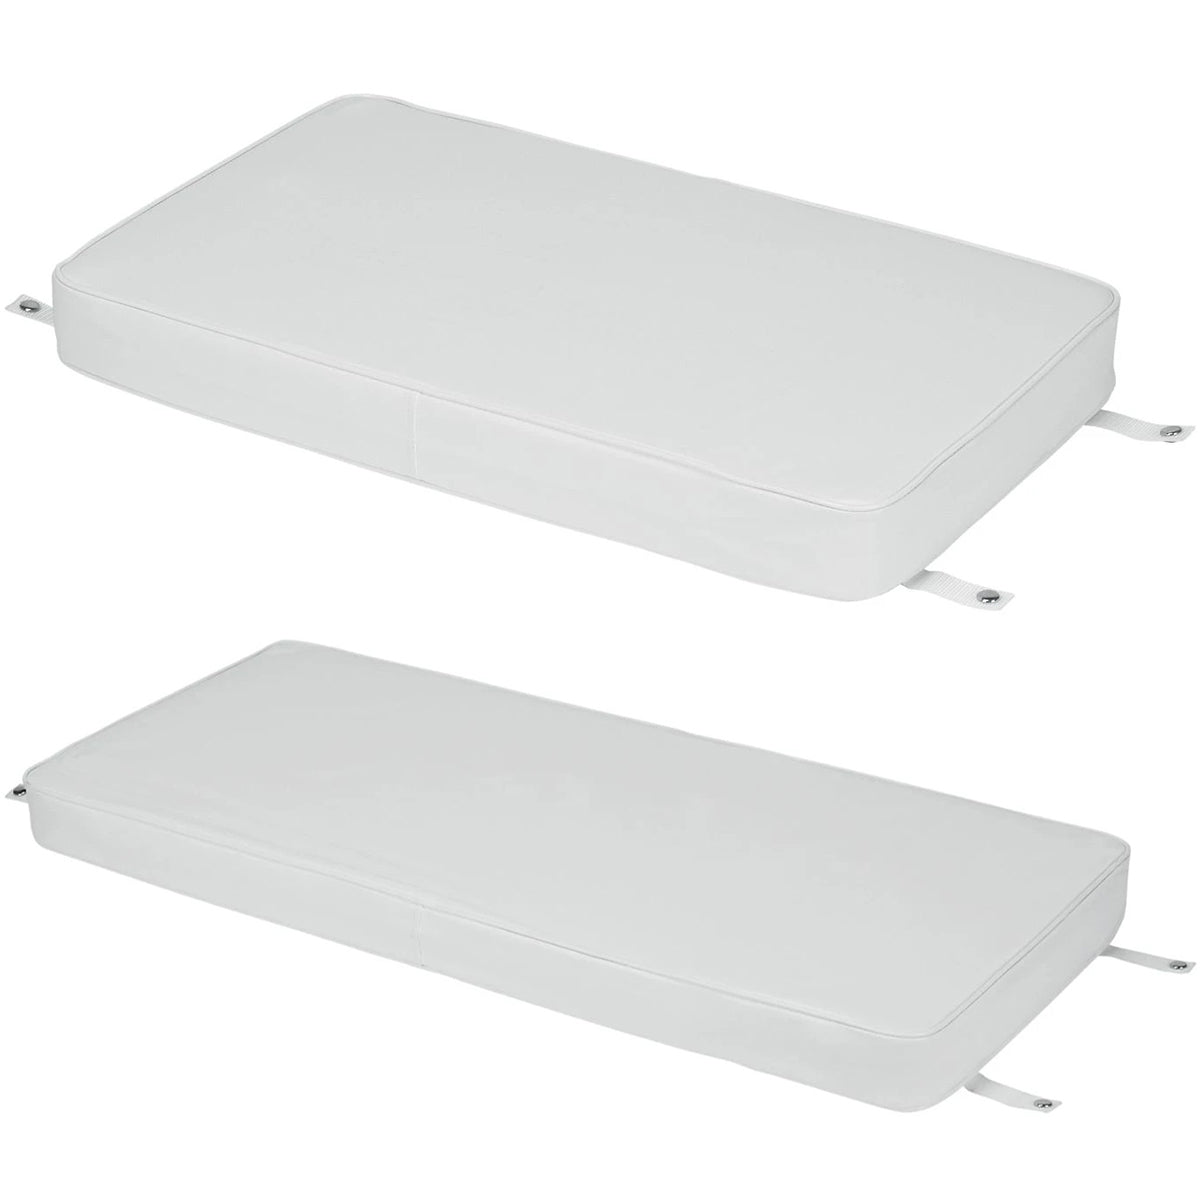 IGLOO Marine Cooler Cushion - White IGLOO